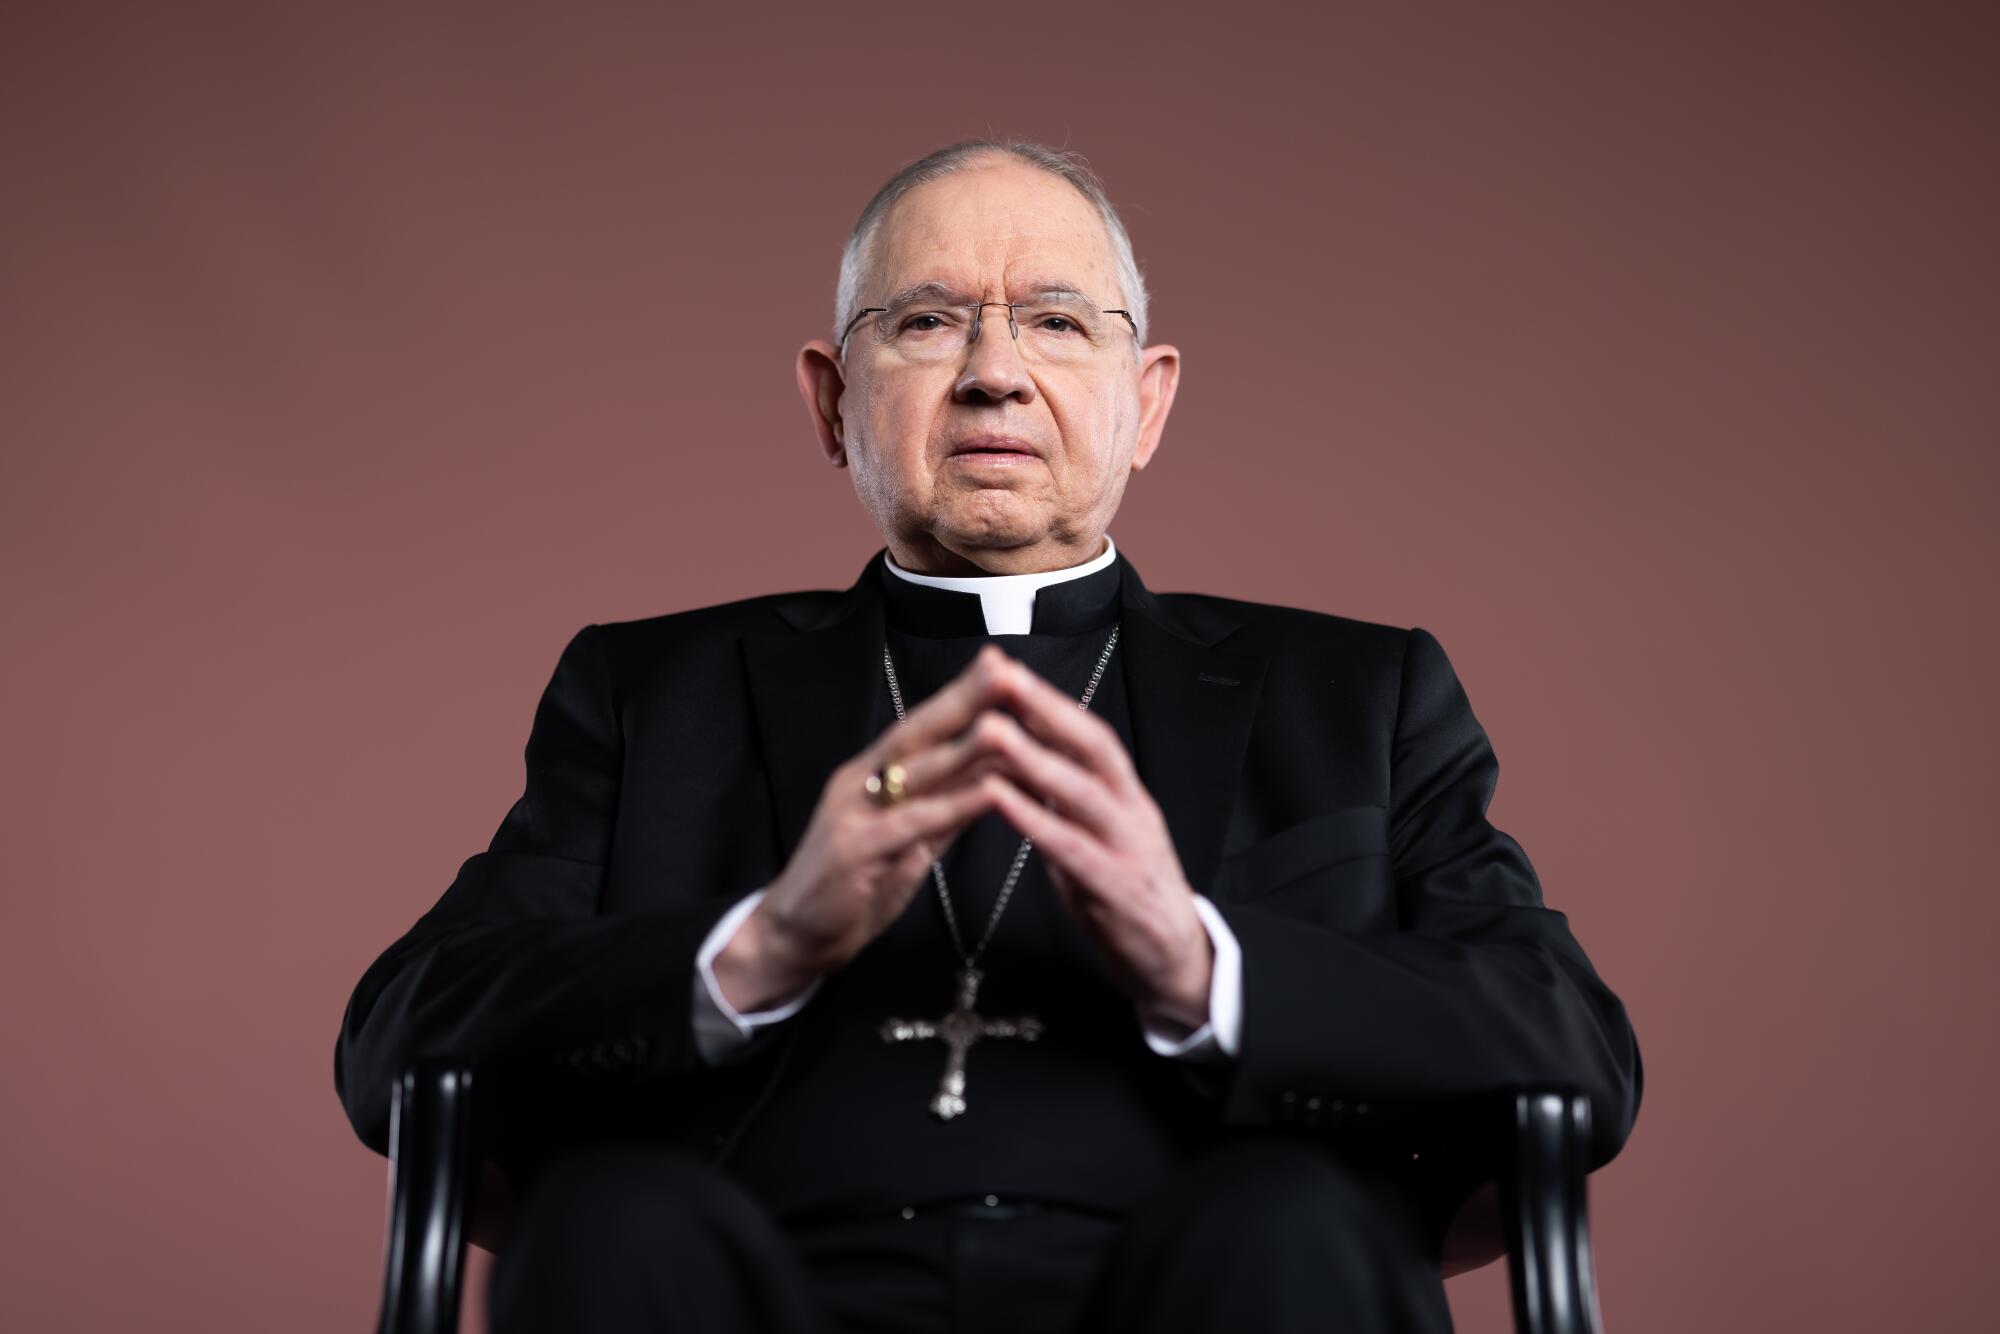 Archbishop José Gomez